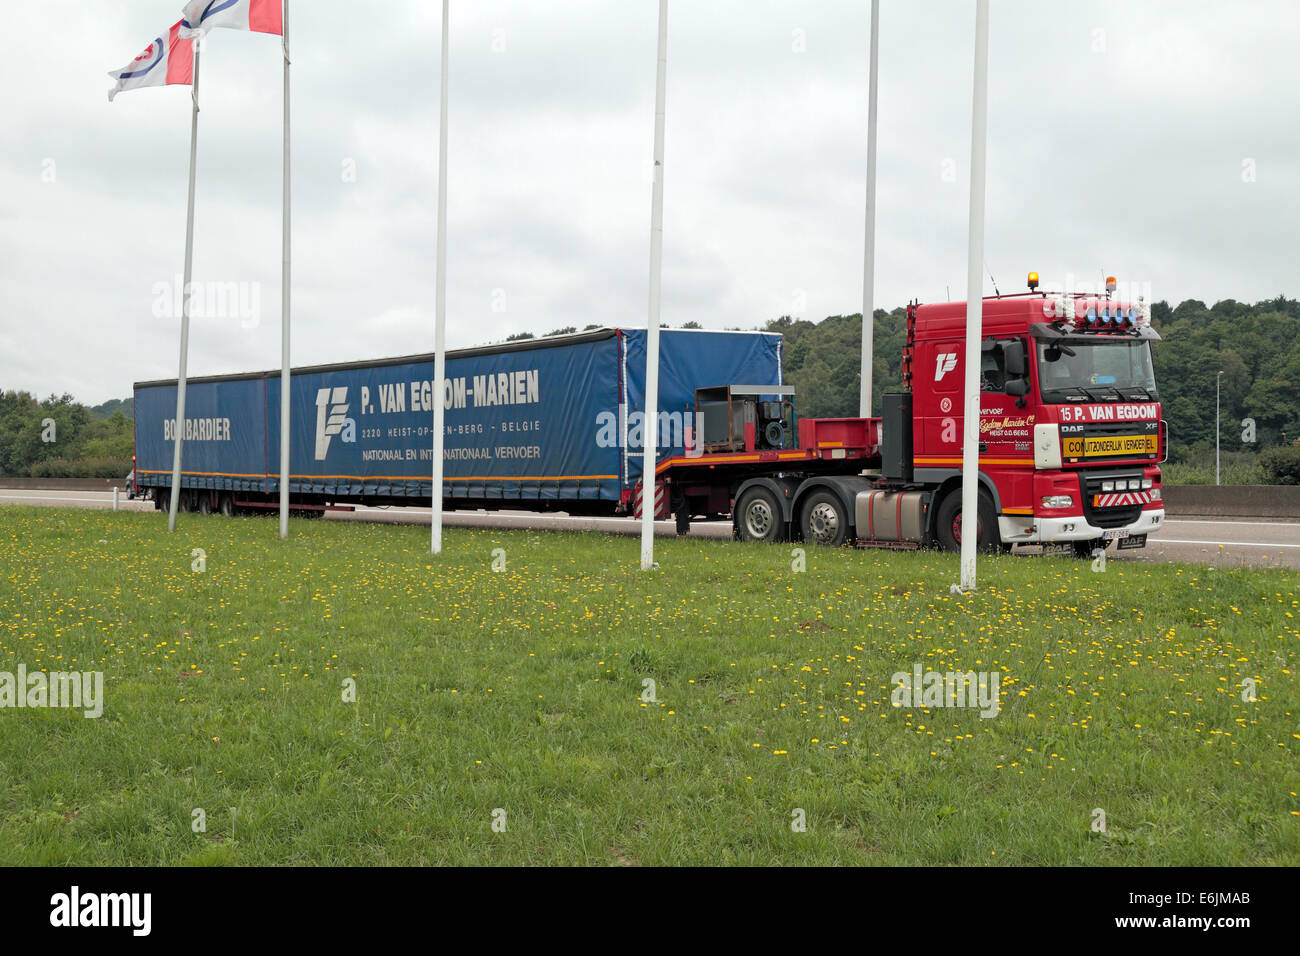 Plus d'un véhicule plus lourd (LHV), également appelé un super camion, est une classification d'un grand véhicule de transport de marchandises (LGV). Vu en Pays-Bas Banque D'Images